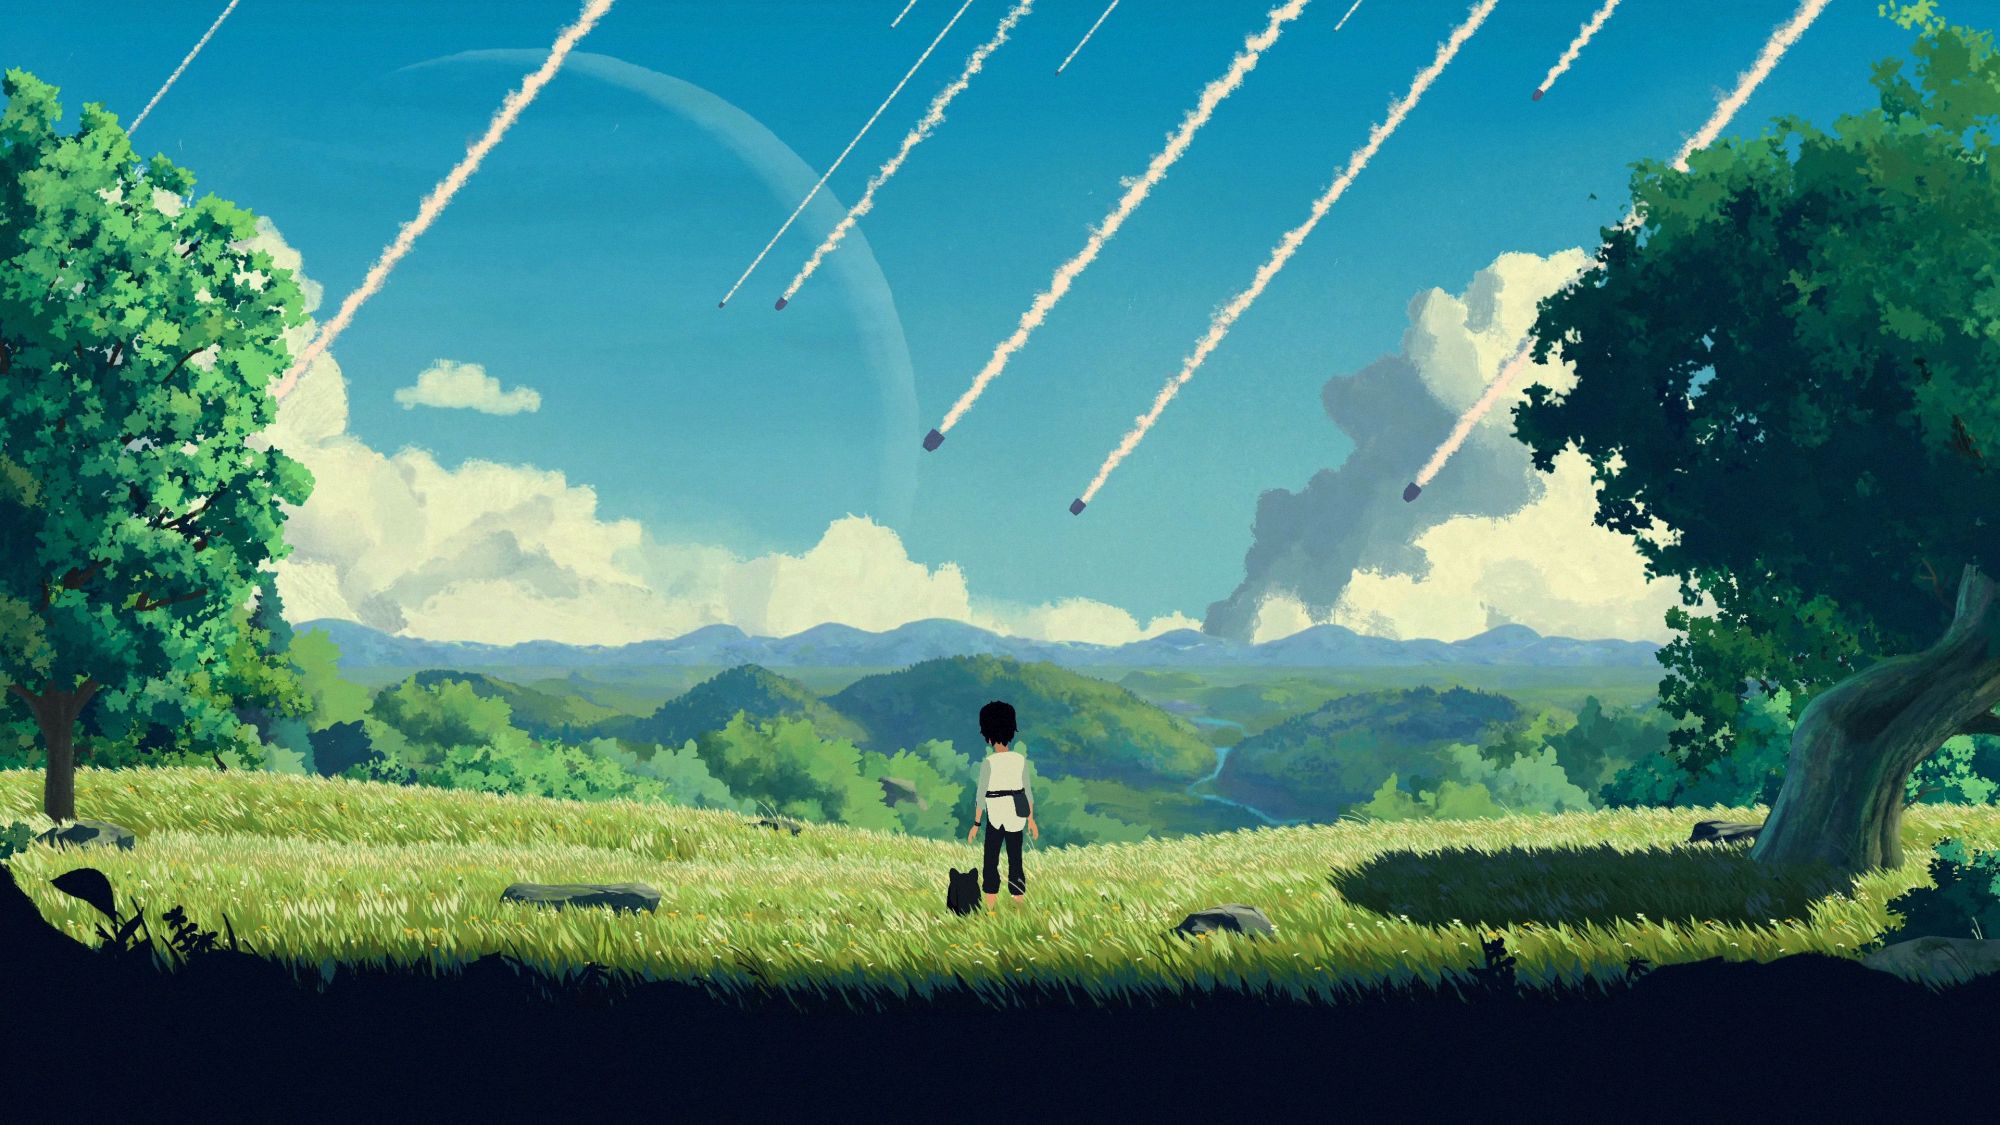 #Planet of Lana mit seinem „Ghibli-like Gameplay“ erscheint bald auch für Switch und PlayStation